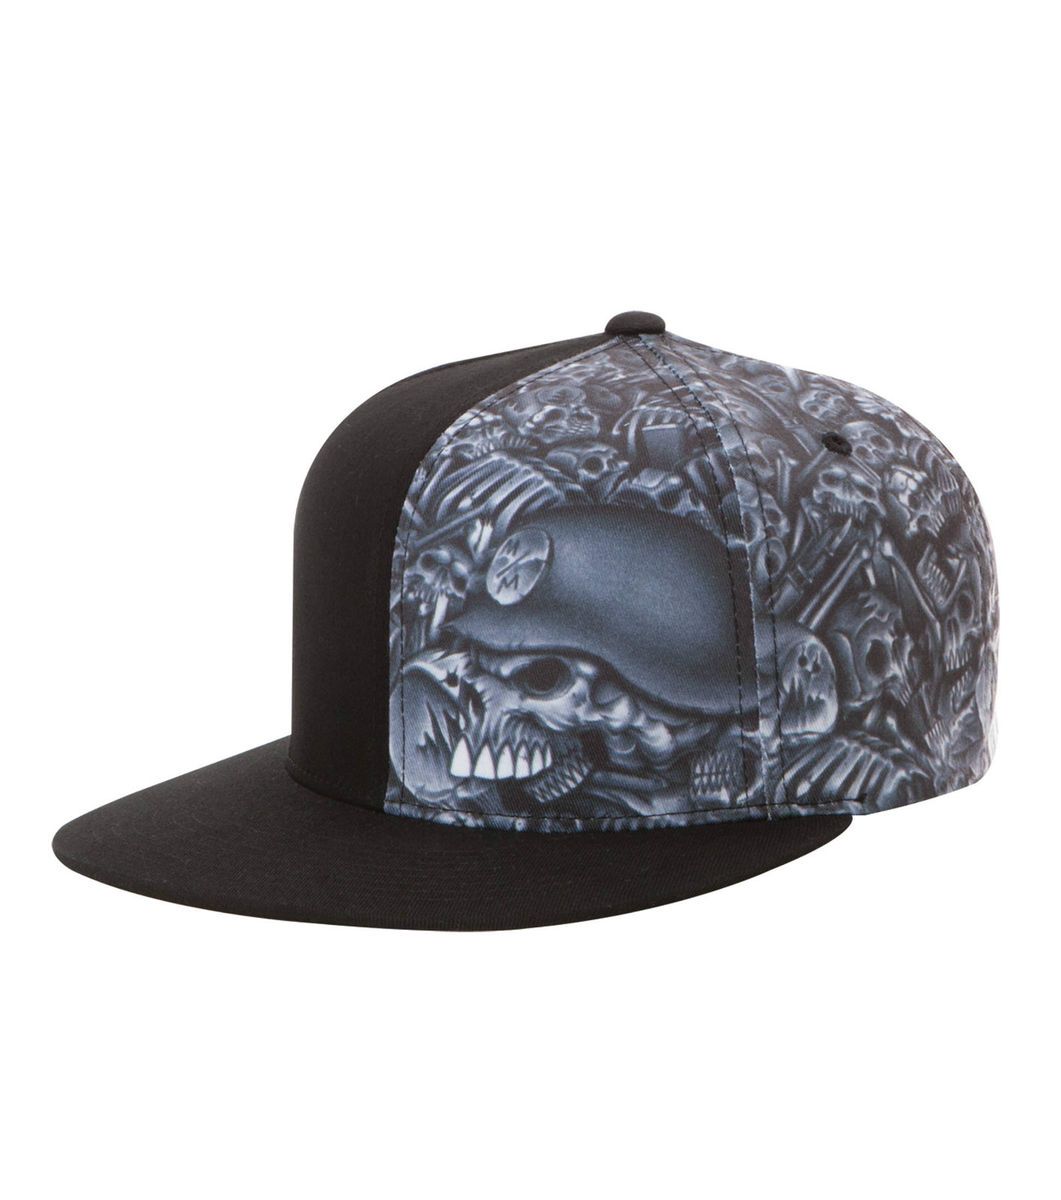  Mulisha Black Skull Hat Cap Deegan Flex Fit mm FMX SX MX